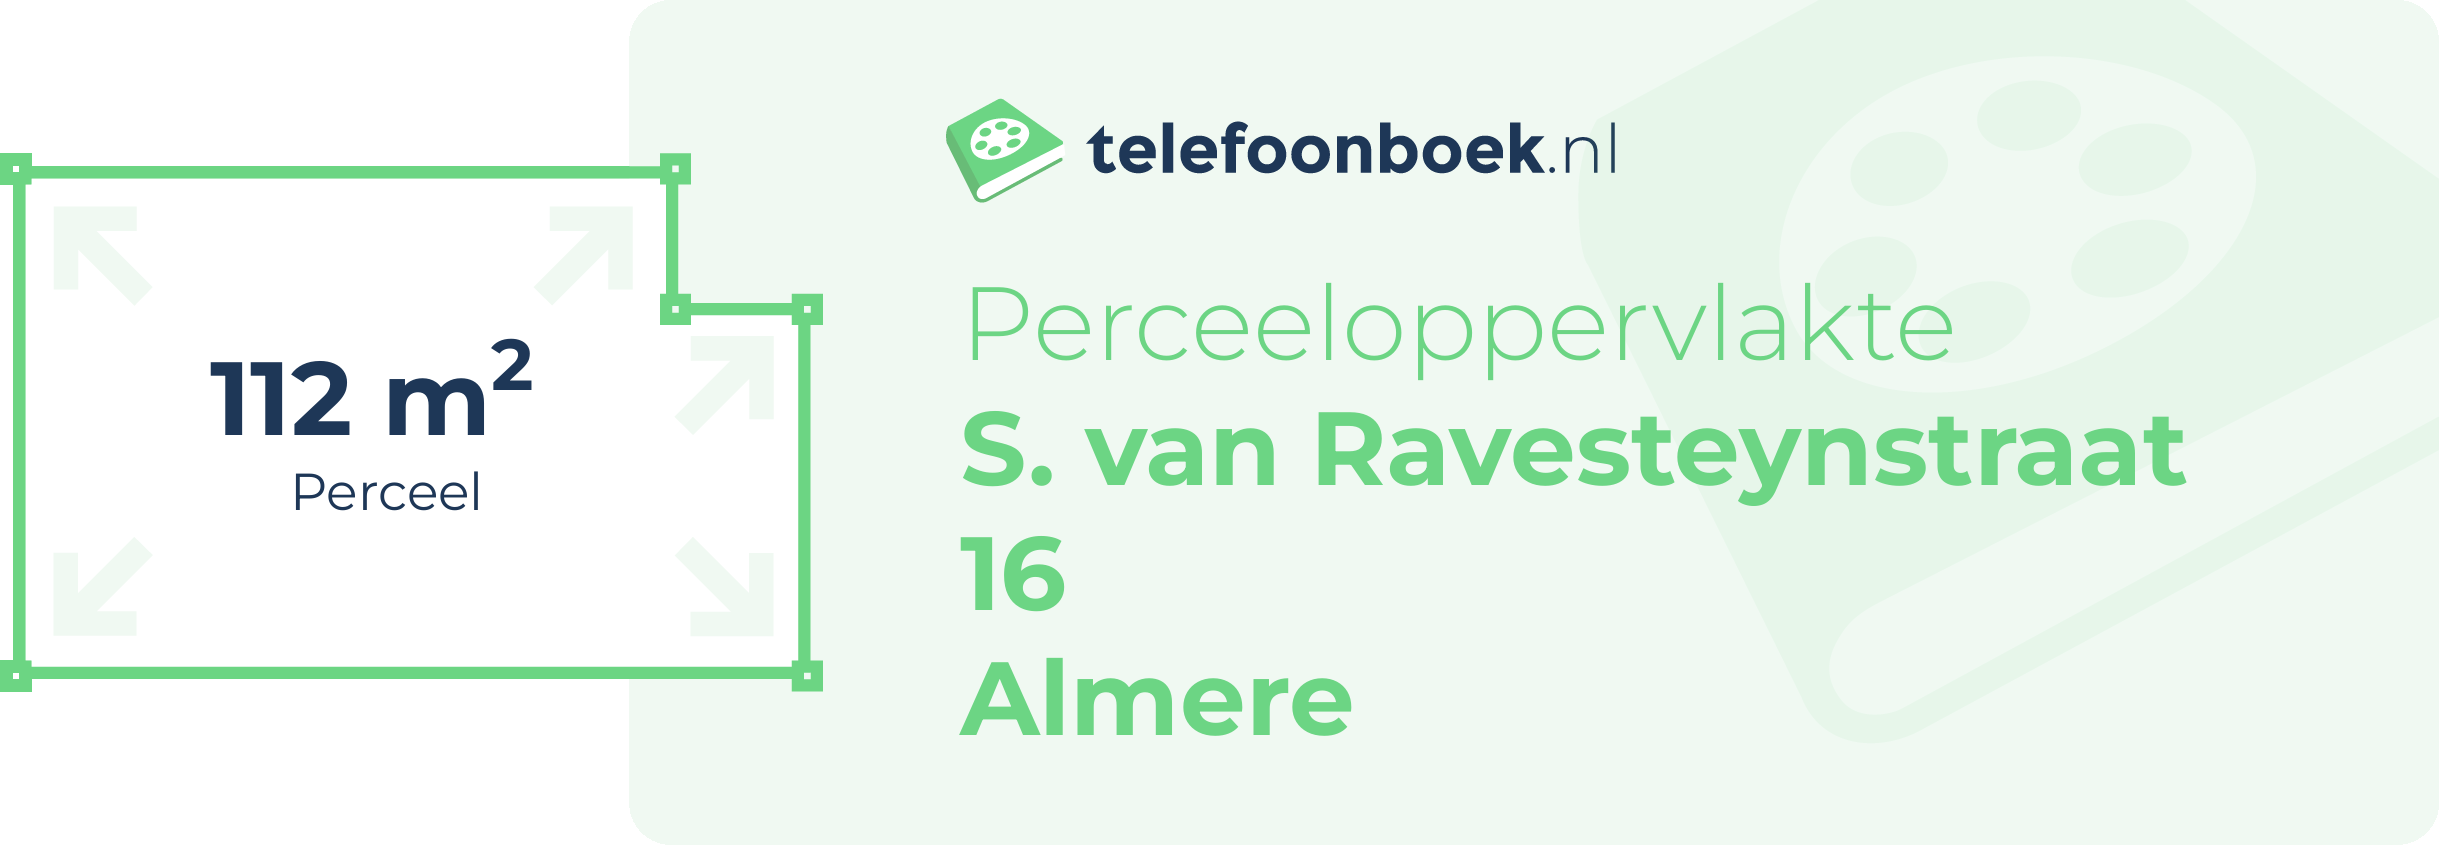 Perceeloppervlakte S. Van Ravesteynstraat 16 Almere